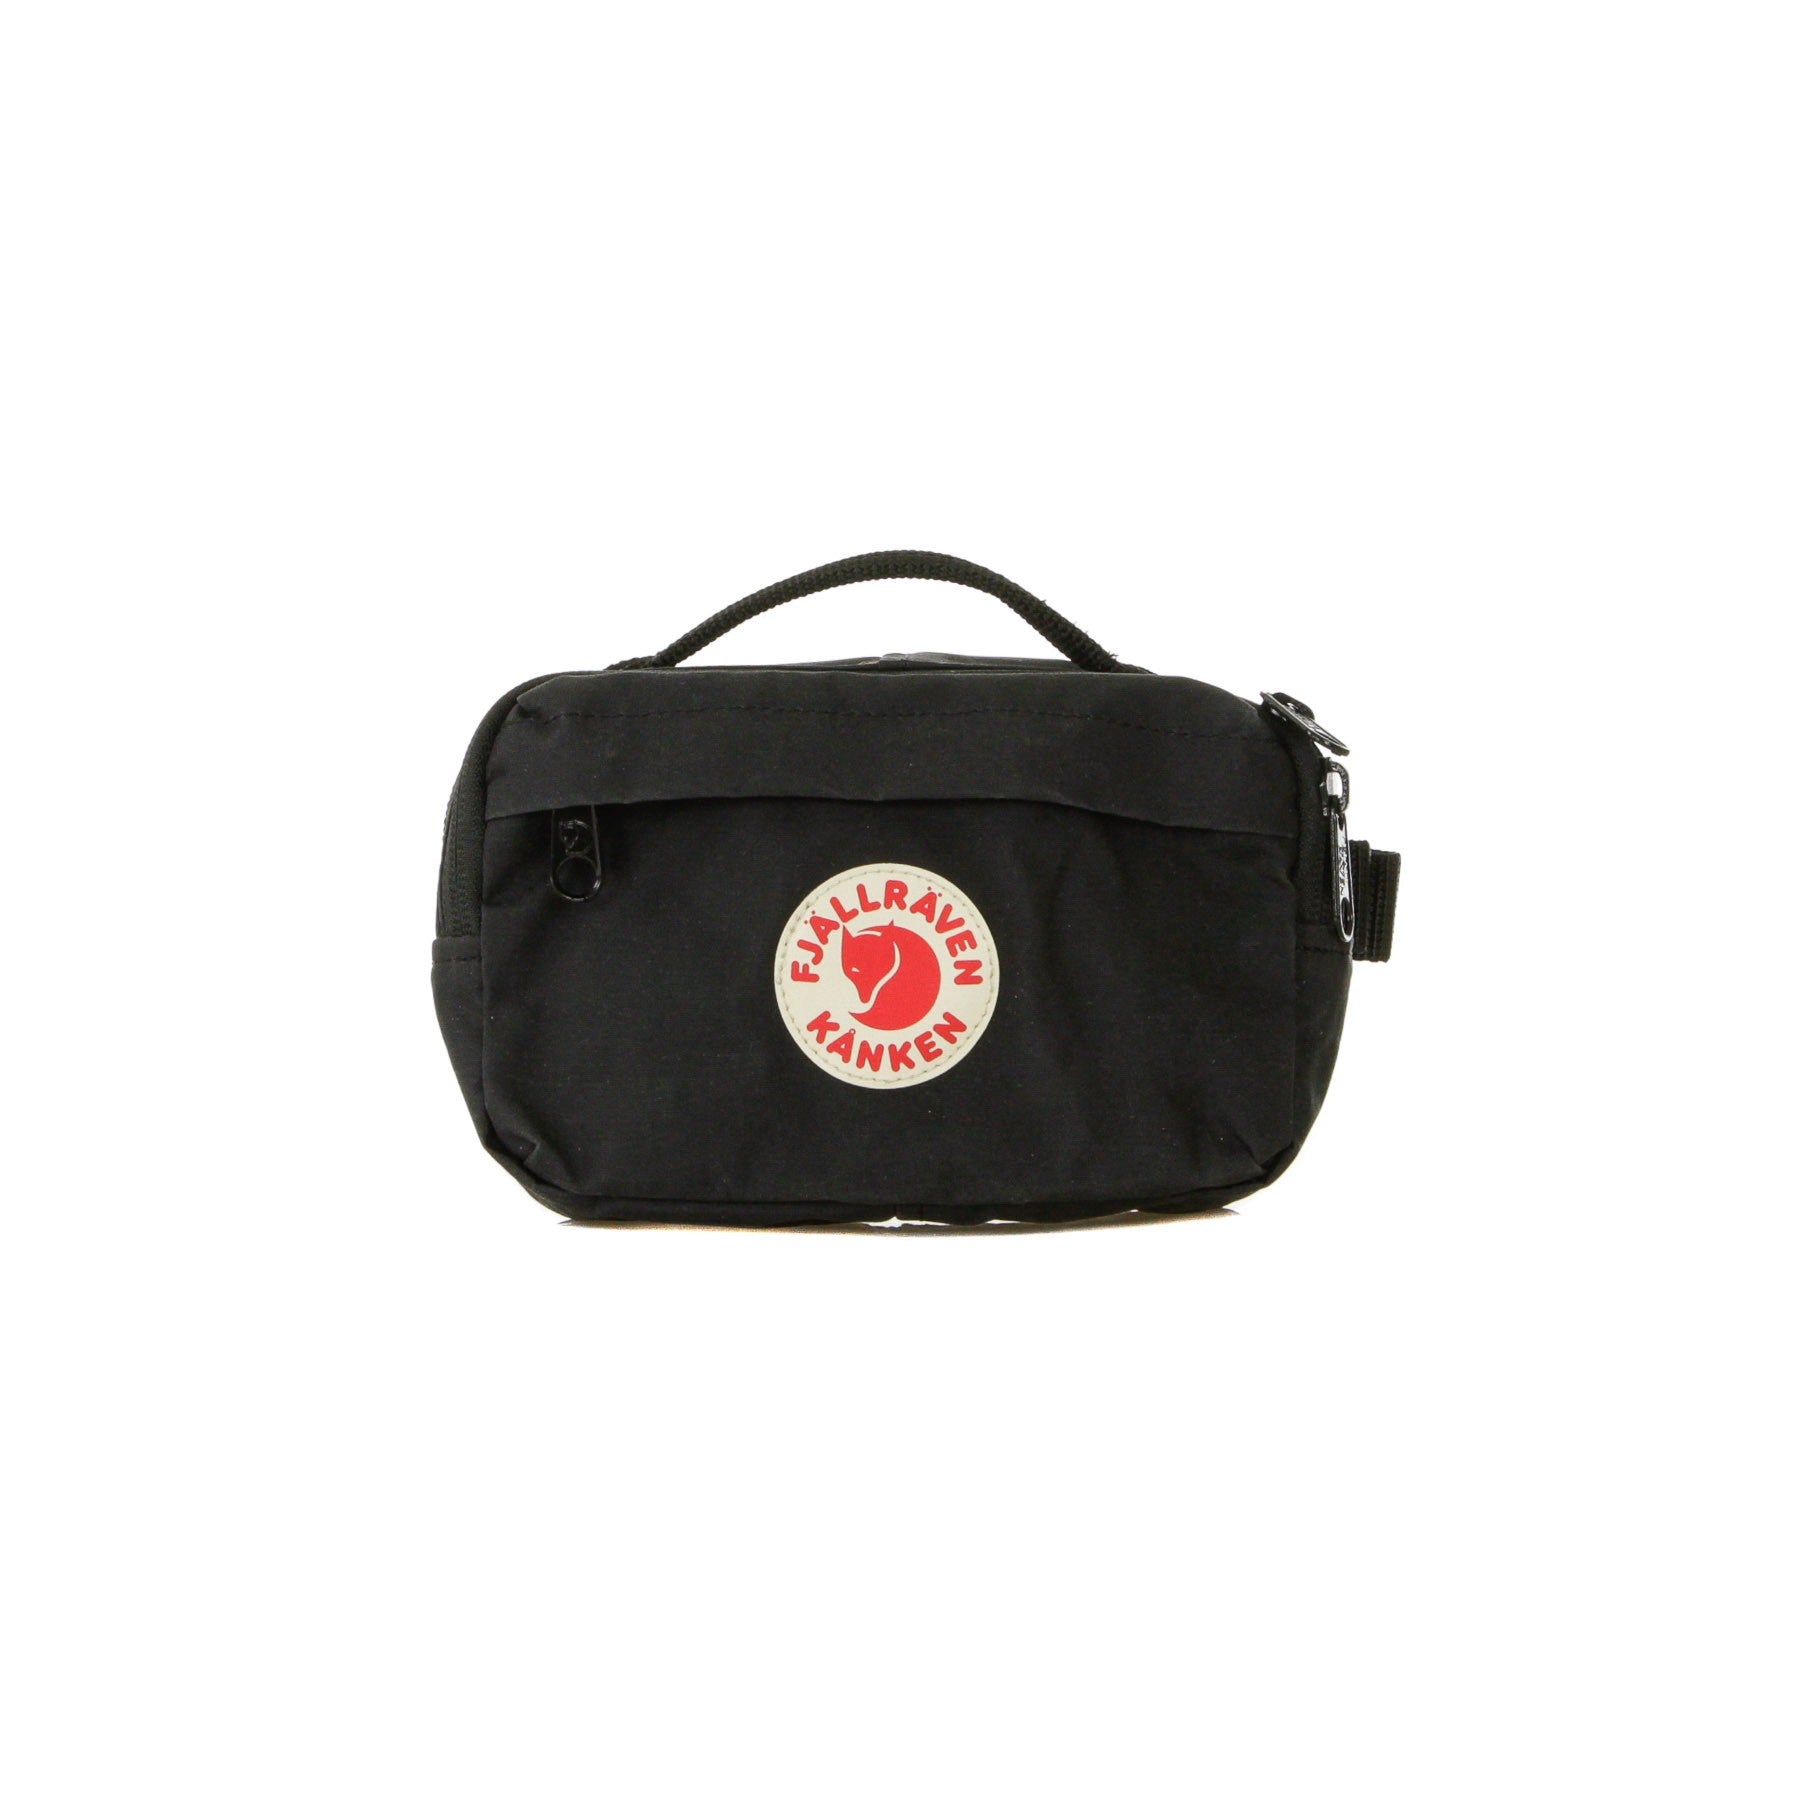 Kanken Hip Pack Black Unisex Bum Bag